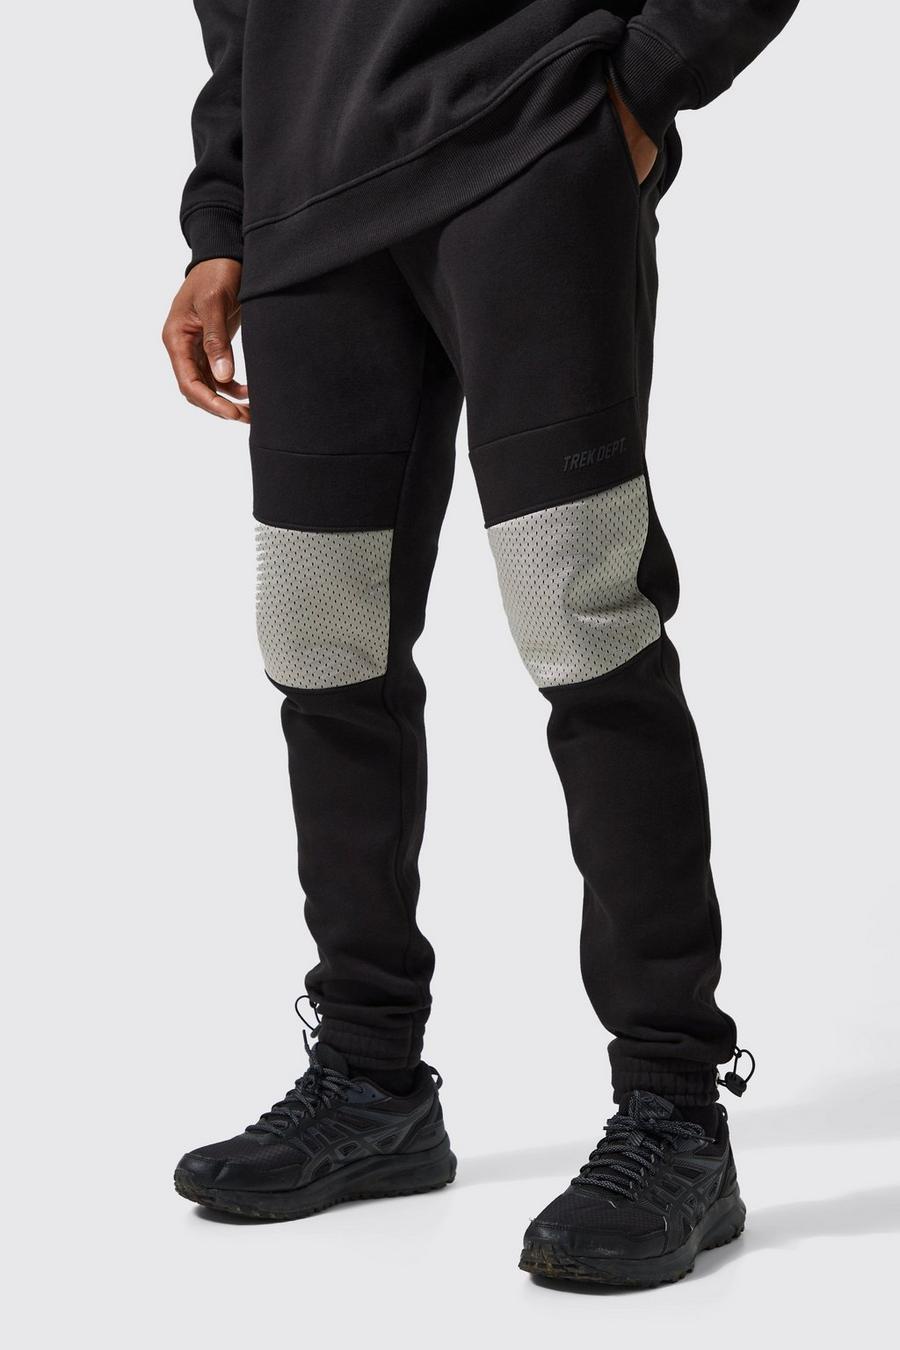 Pantalón deportivo Active pitillo de malla con botamanga, Black